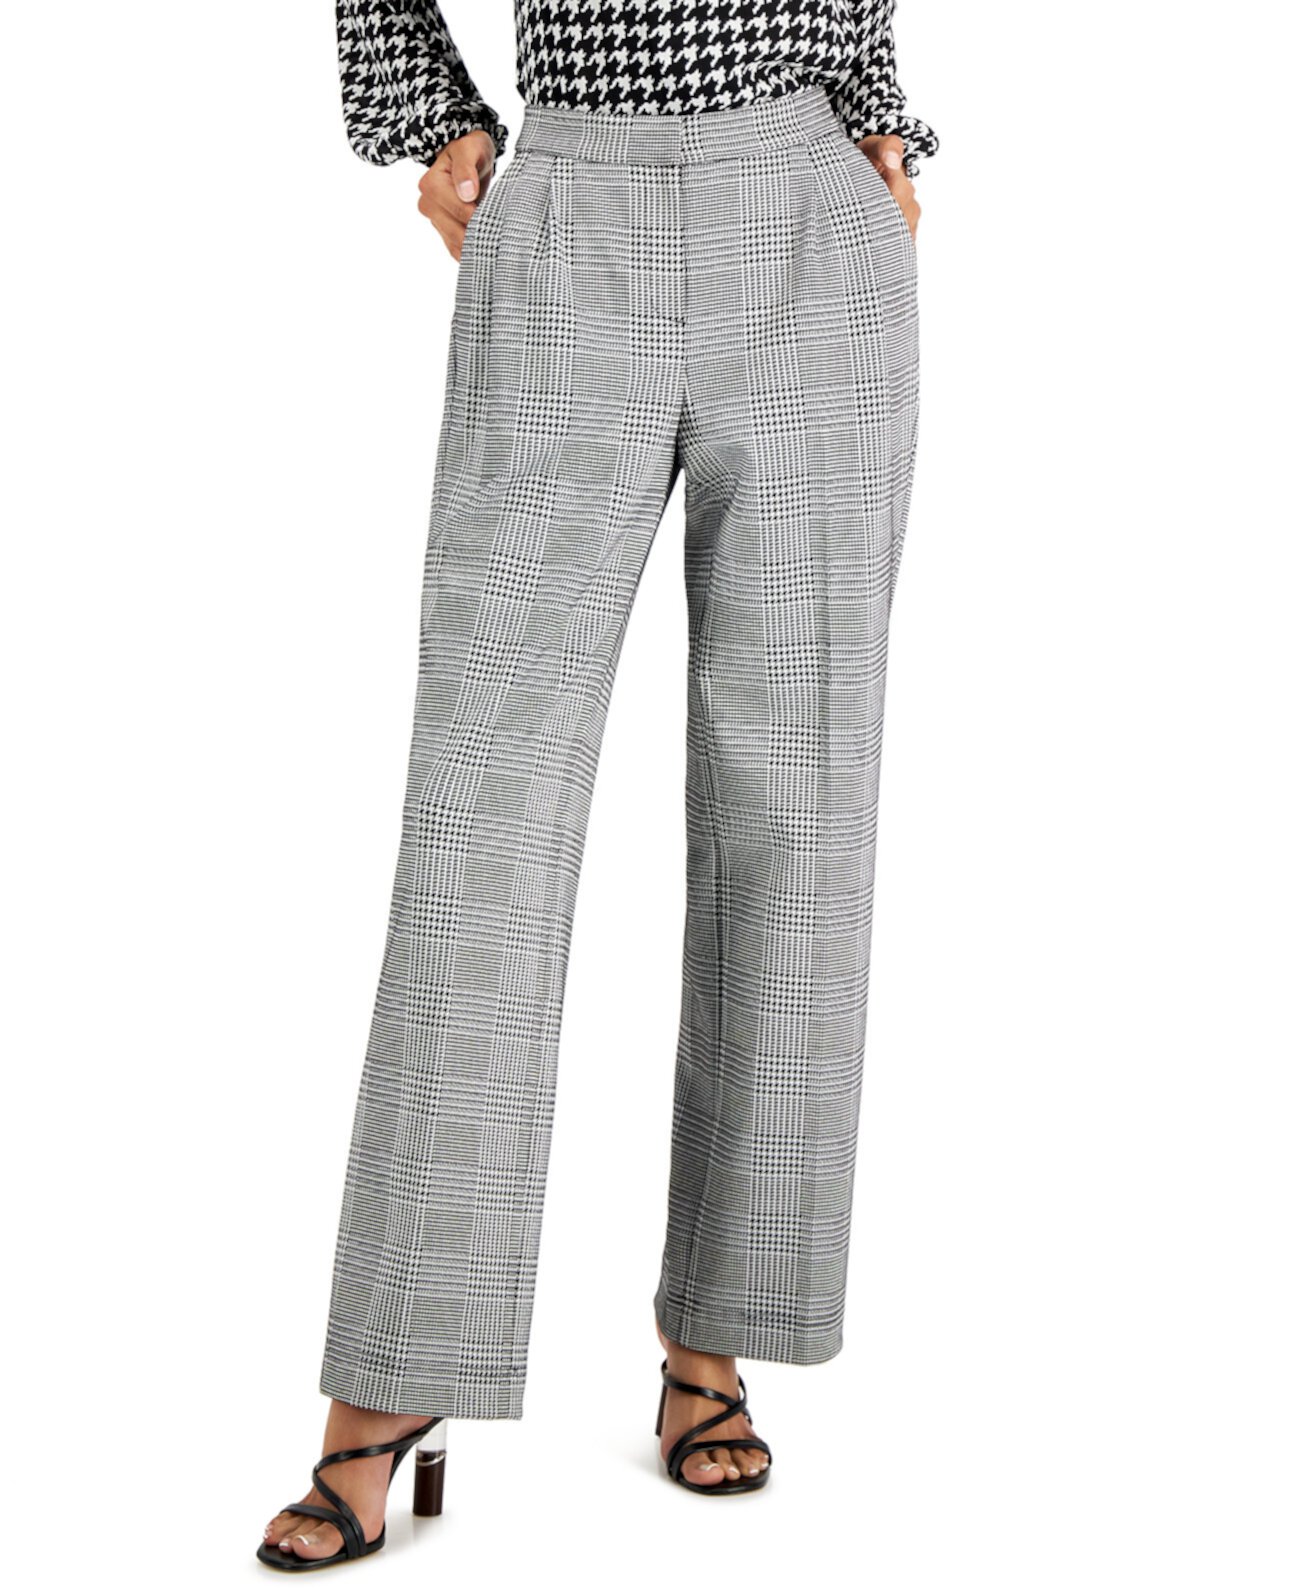 Женские широкие брюки в клетку со складками, созданные для Macy's Bar III